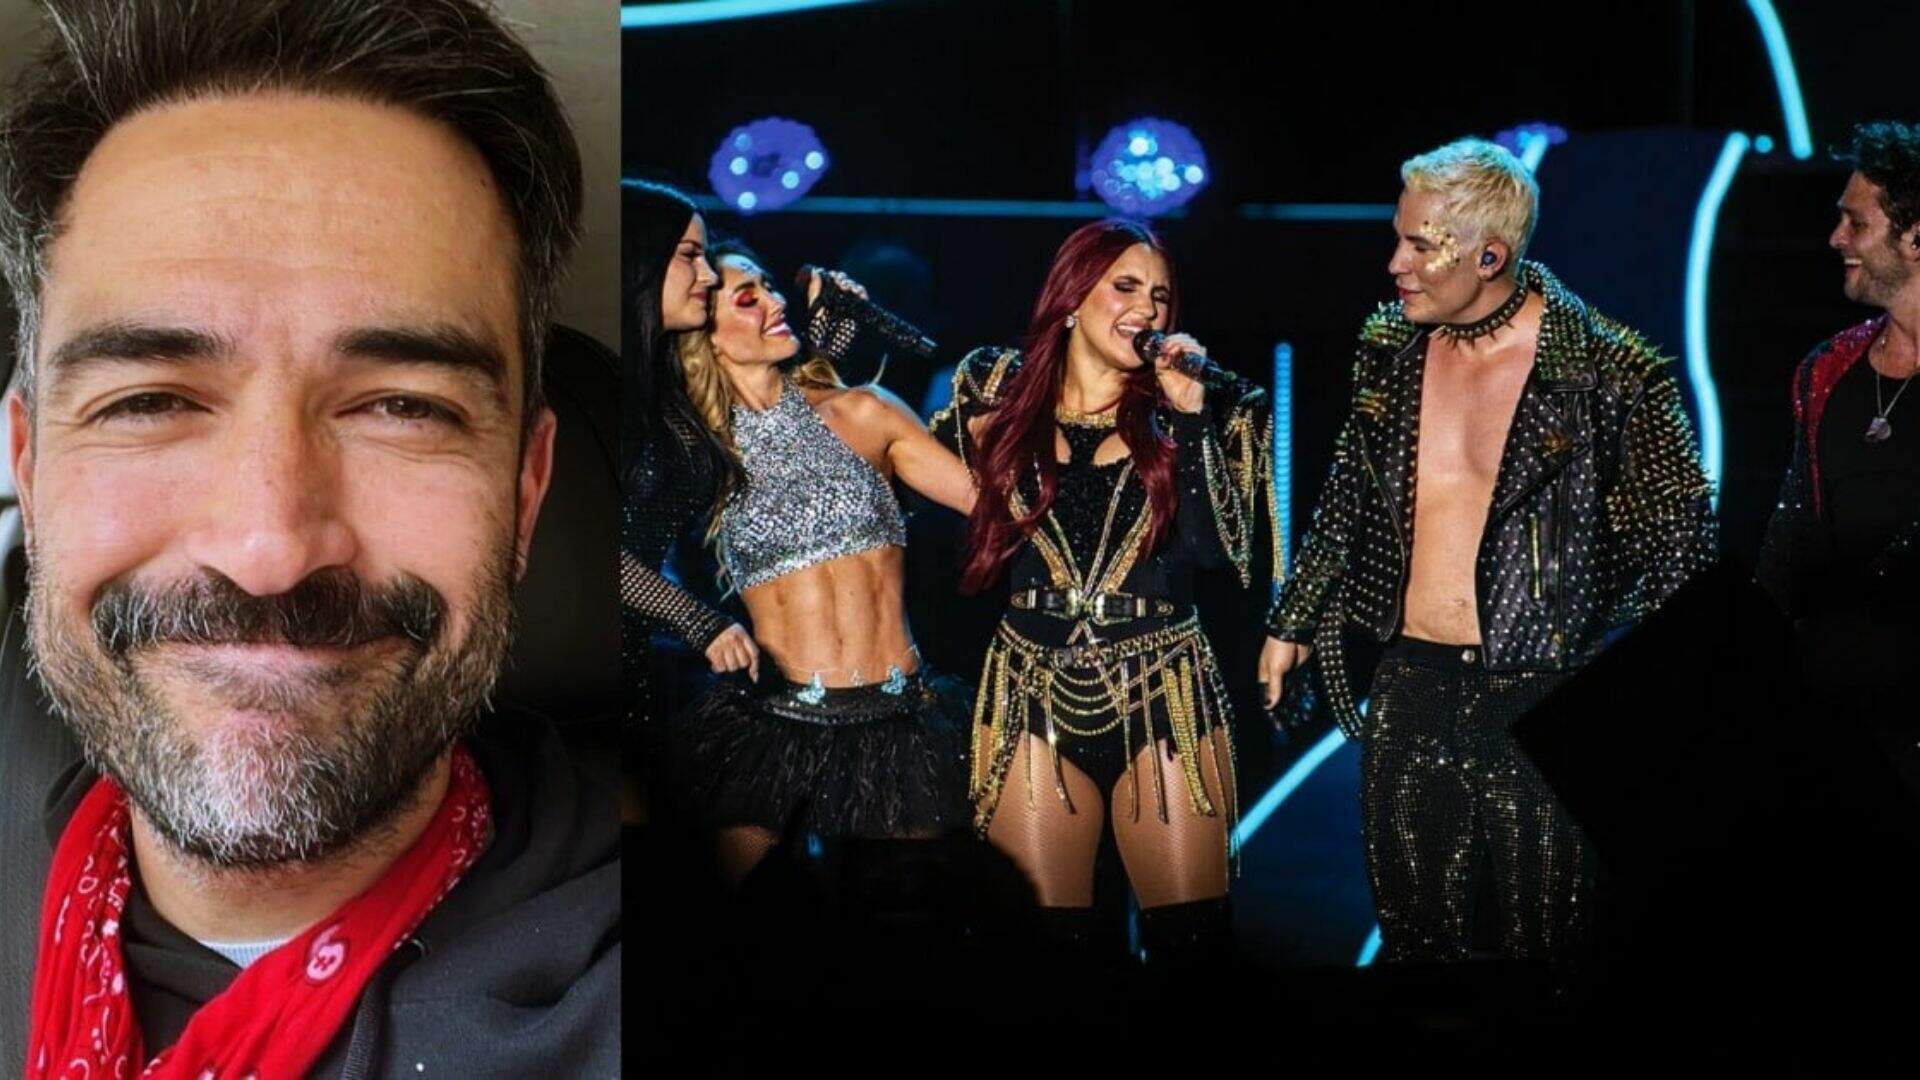 Alfonso Herrera vai participar do último show da “Soy Rebelde Tour”? Artista abre o jogo e esclarece verdade aos fãs - Metropolitana FM